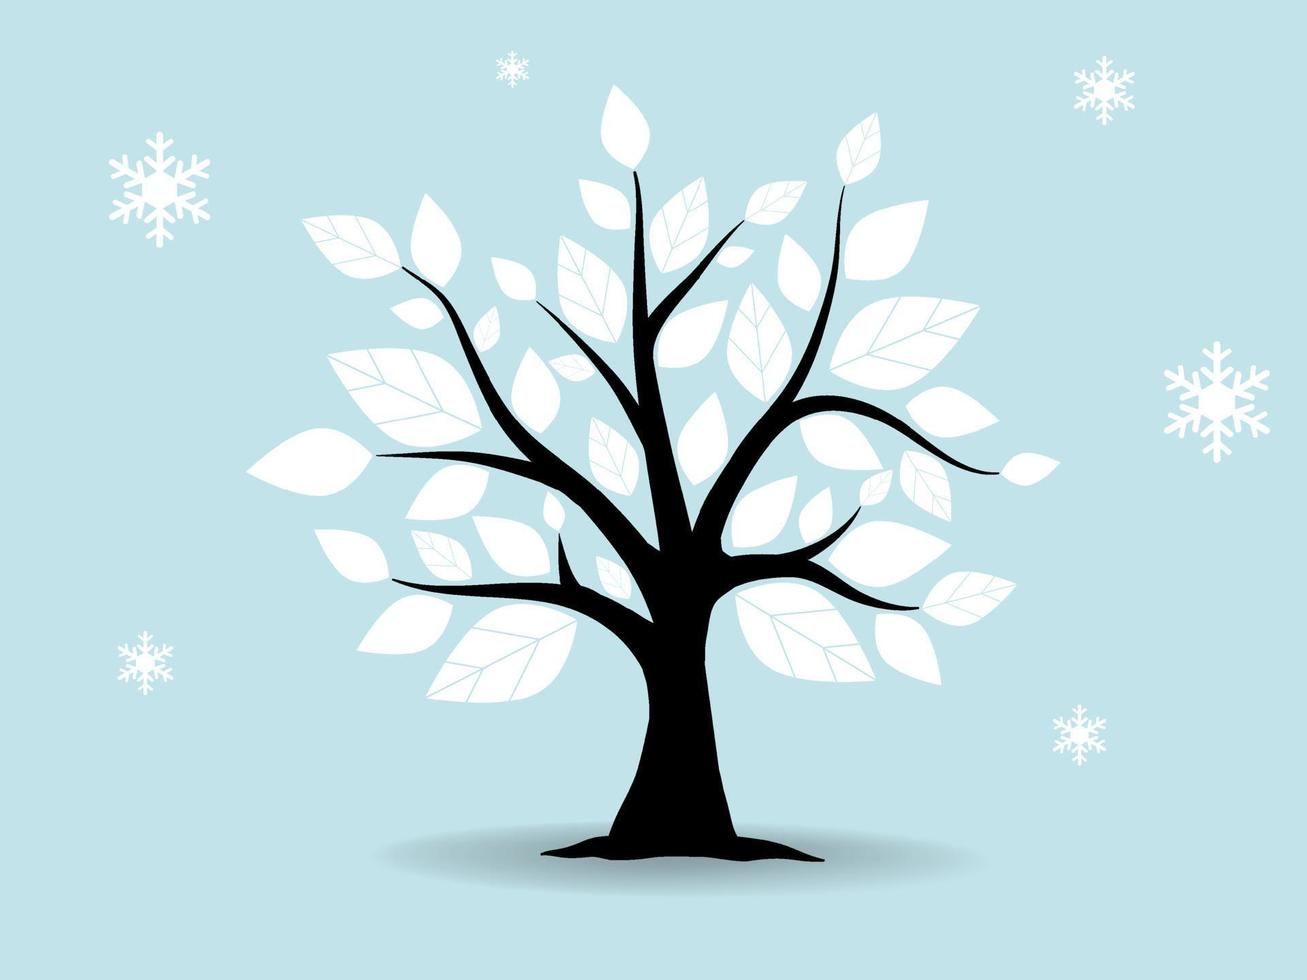 fond de forêt d'arbres noir et branche et il neige pour le concept de saison d'hiver. illustrations isolées dessinées à la main. vecteur